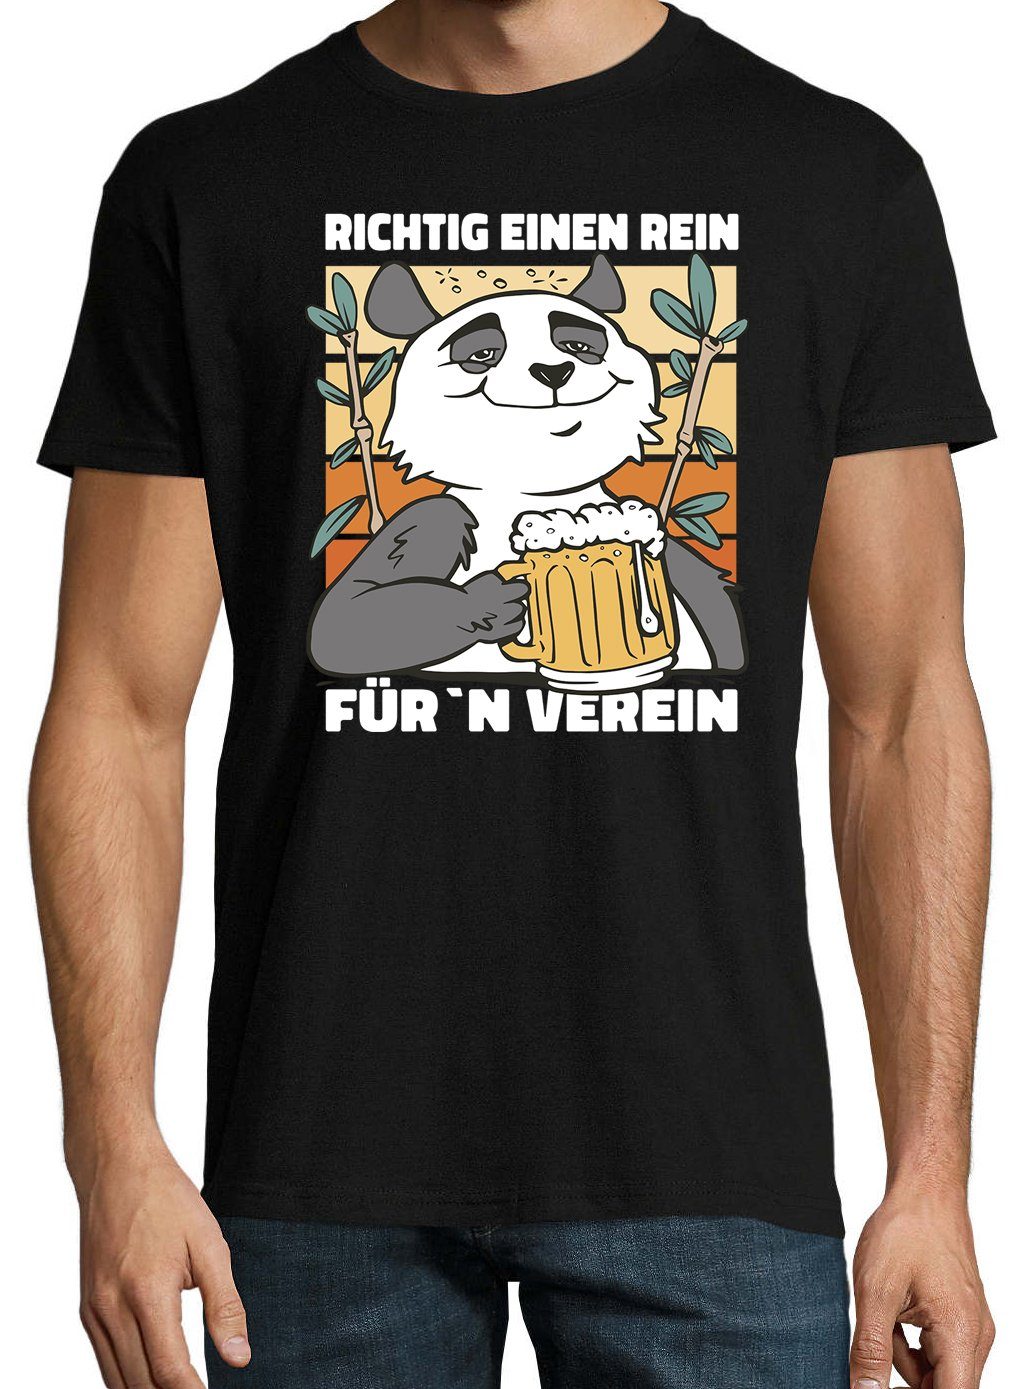 T-Shirt Verein" mit Für´n Youth Frontprint Herren Schwarz Designz Rein, trendigem Shirt "Richtig Ein